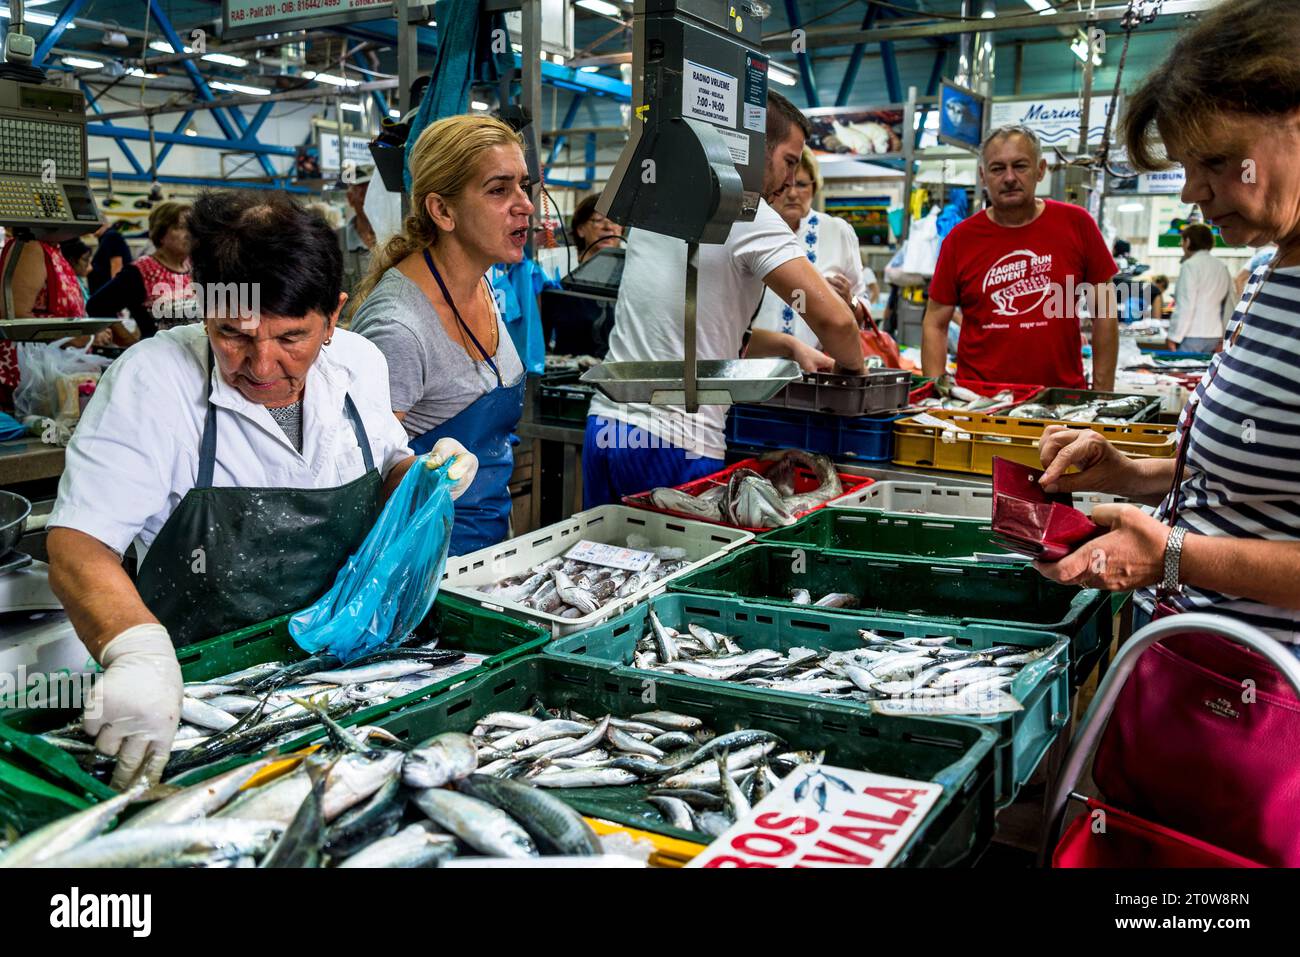 Dolac Market,Fish Market, Zagreb, Croatia Stock Photo